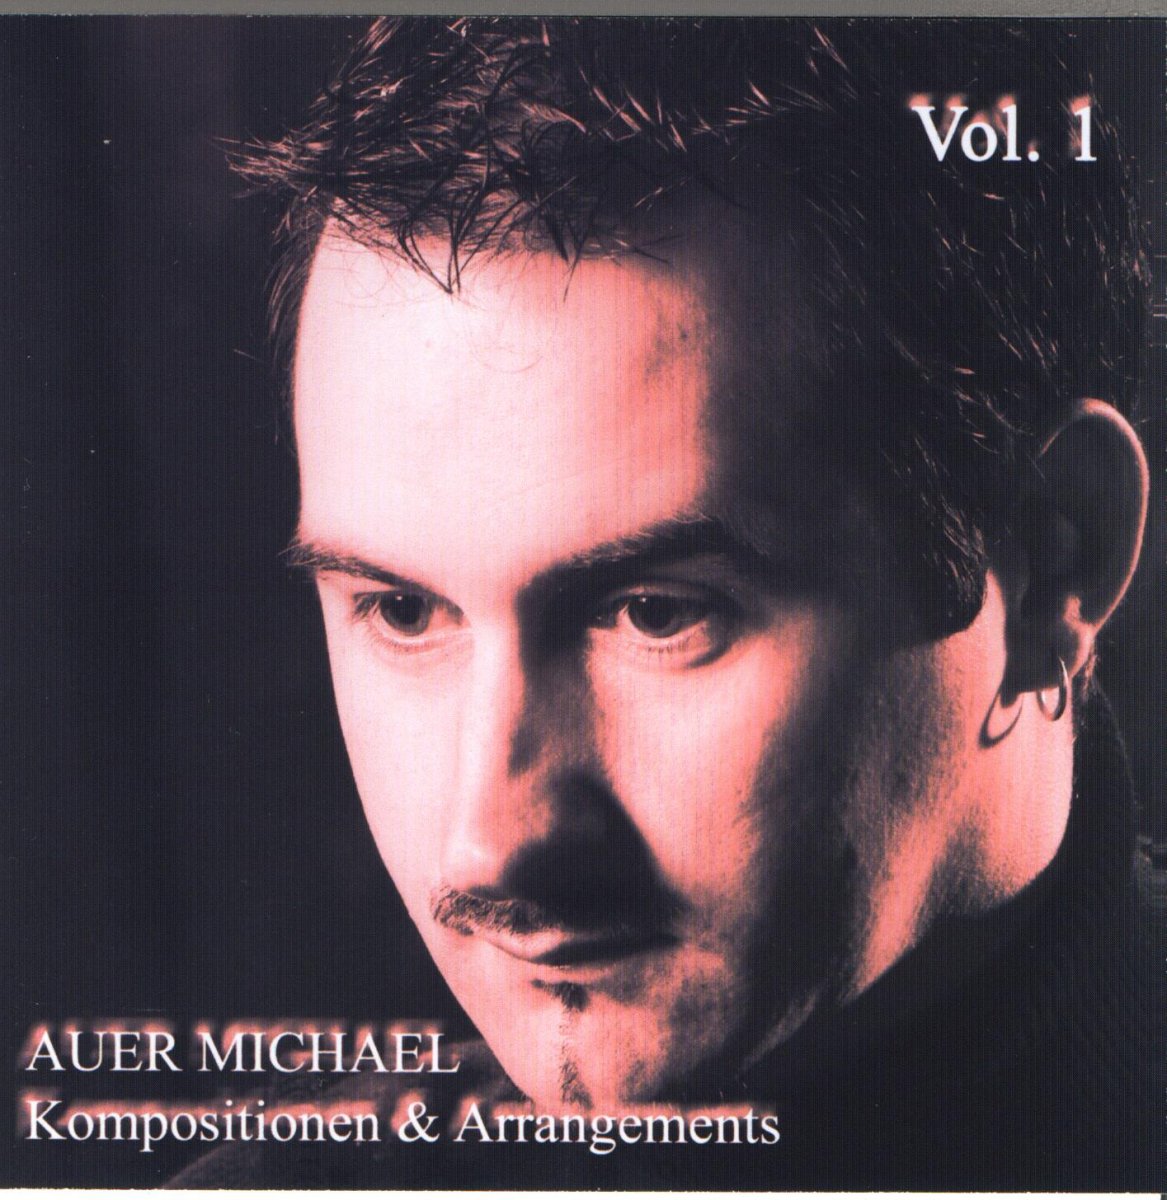 Auer Michael: Kompositionen und Arrangements #1 - click here